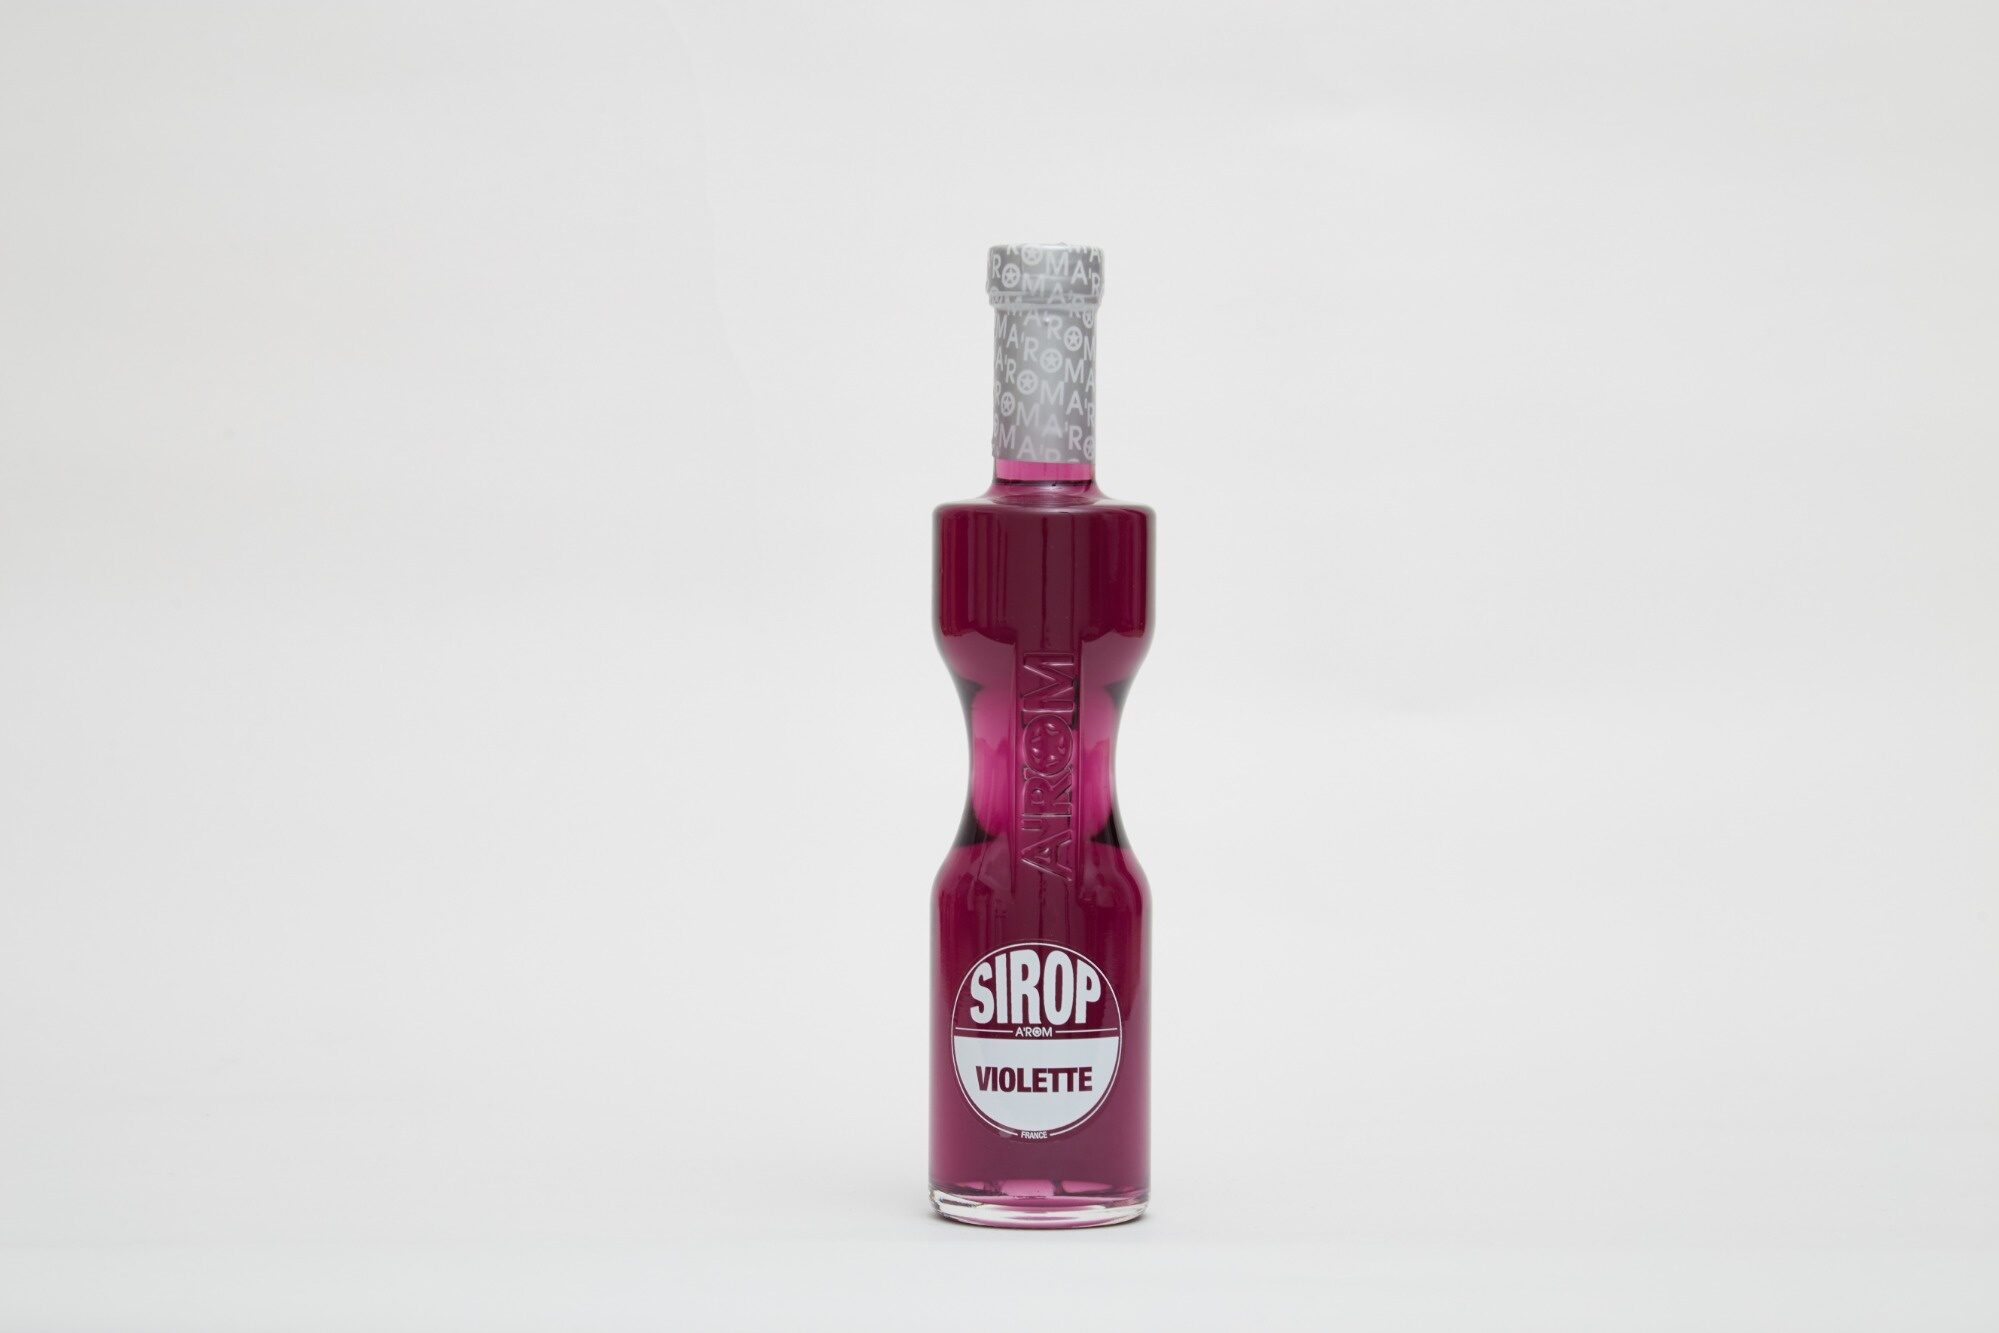 Sirop goût Violette - Product - fr